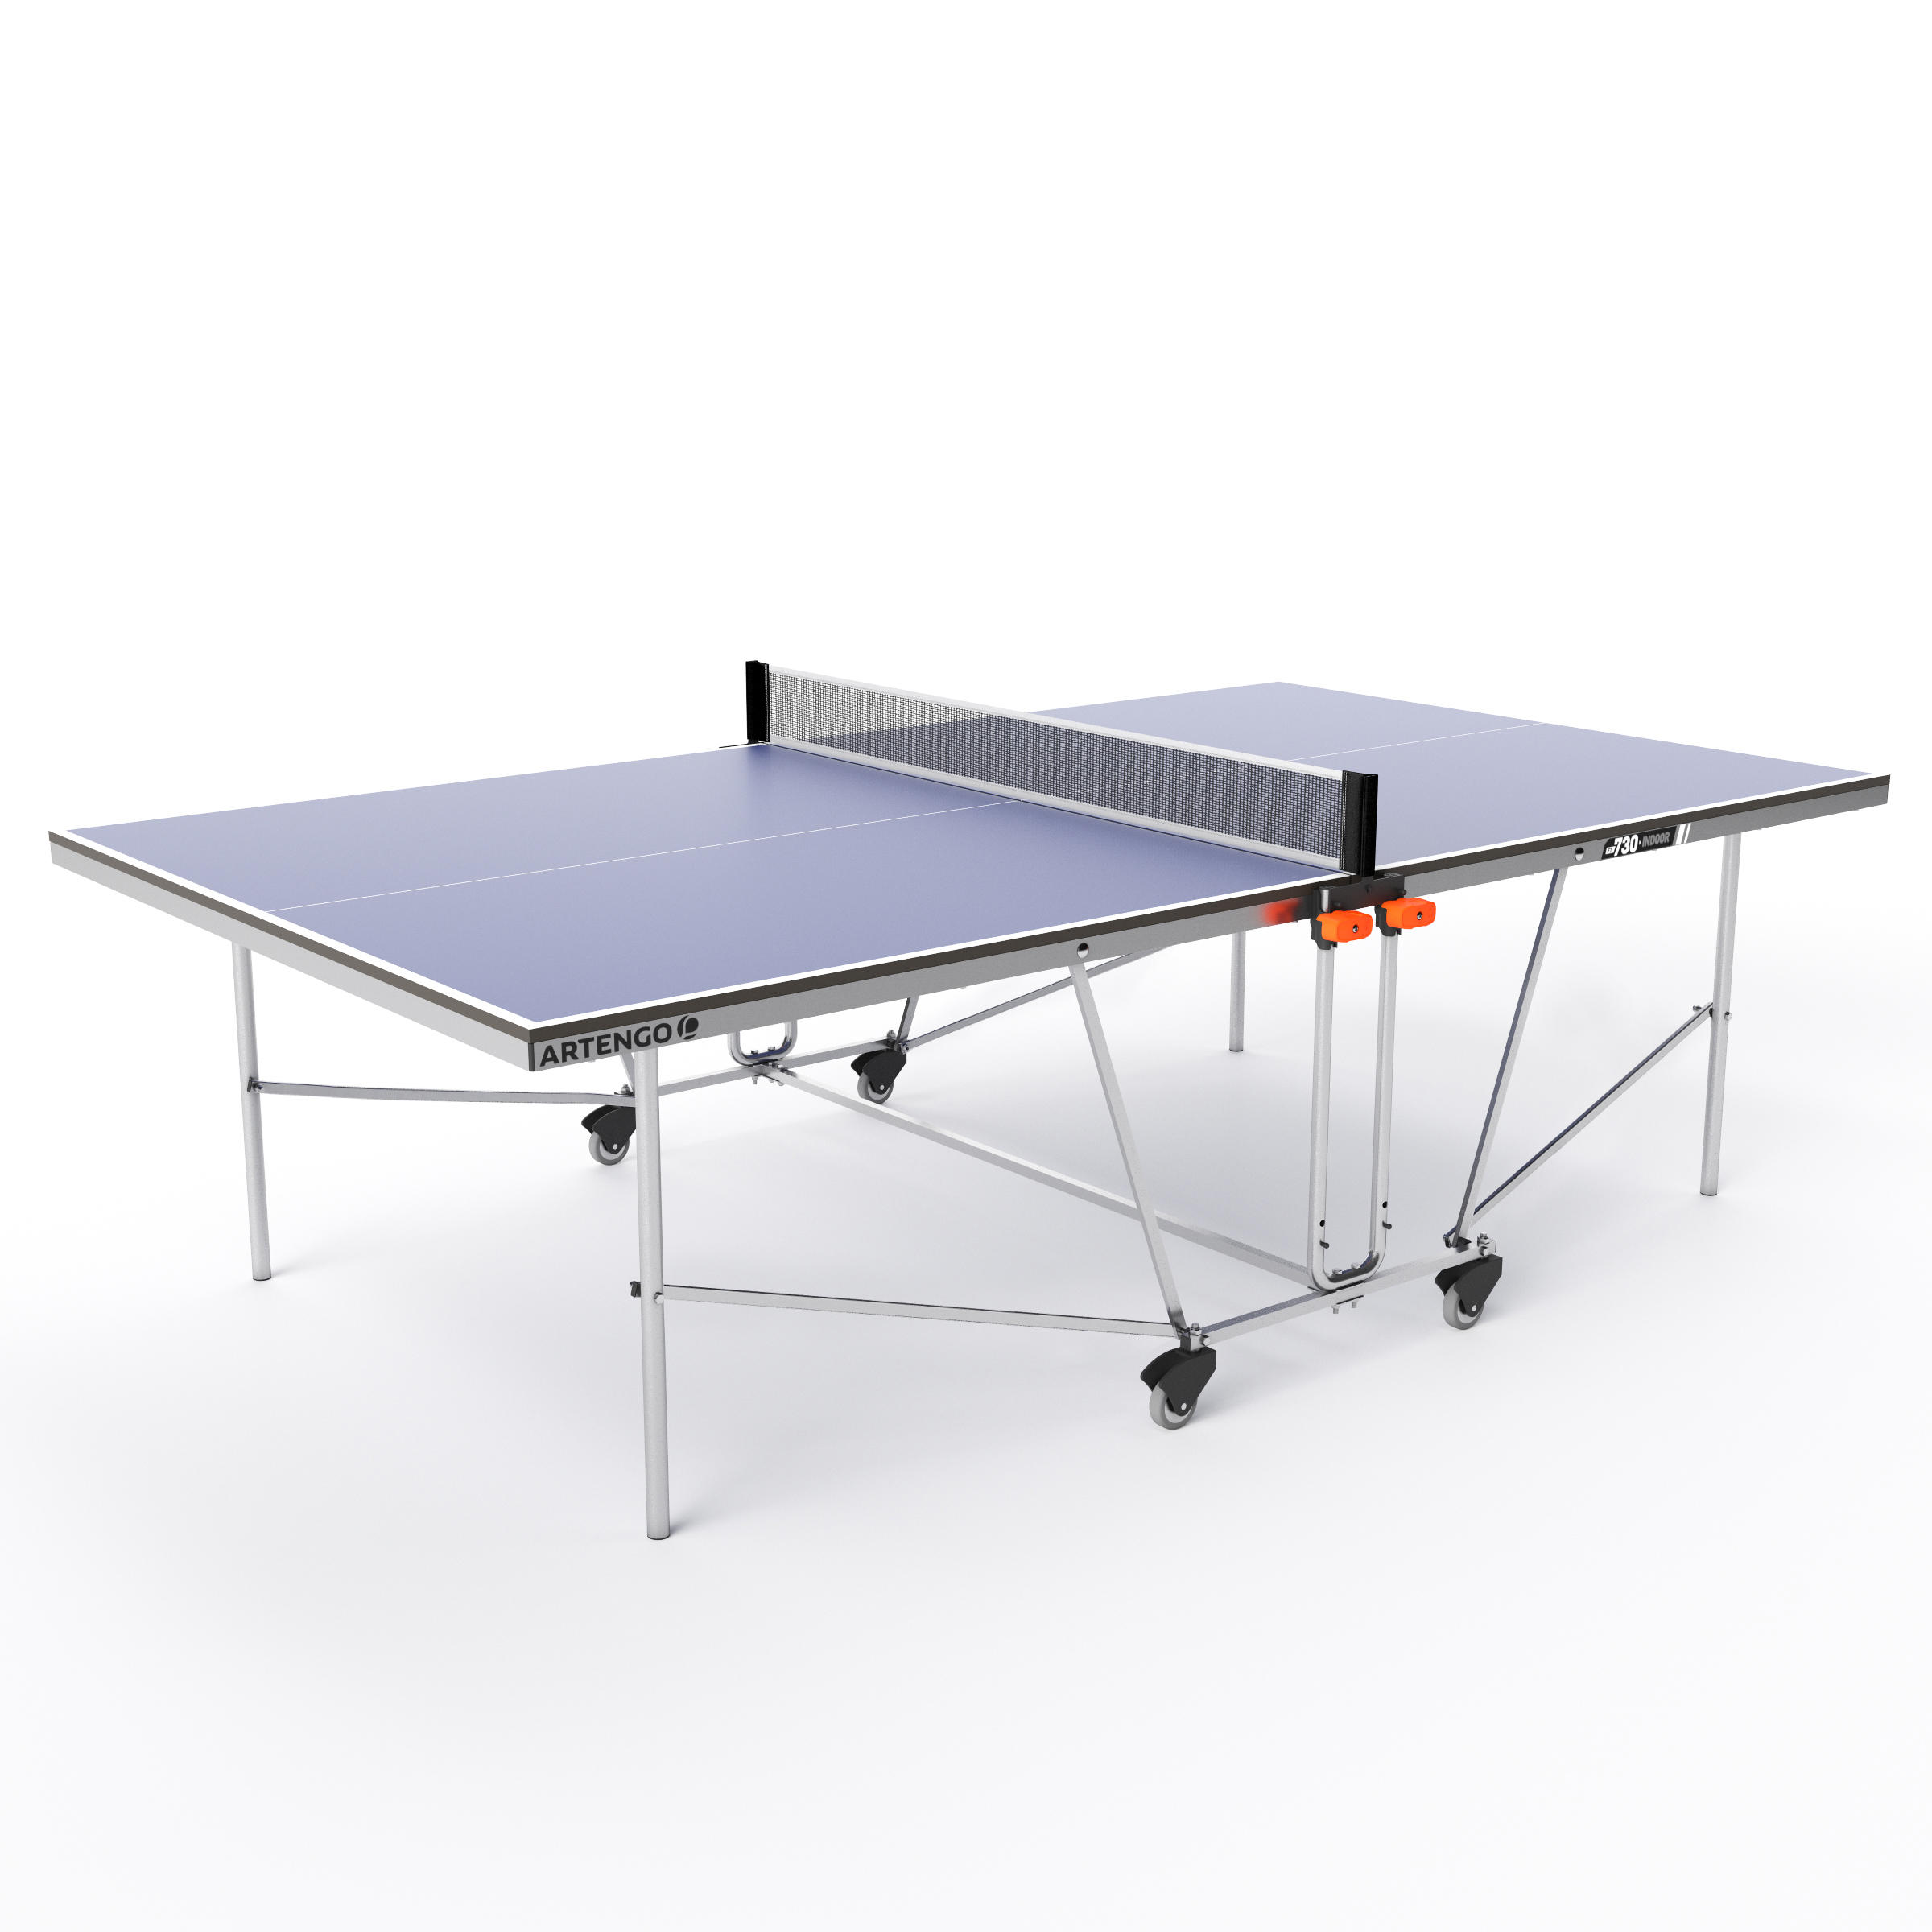 decathlon table tennis table